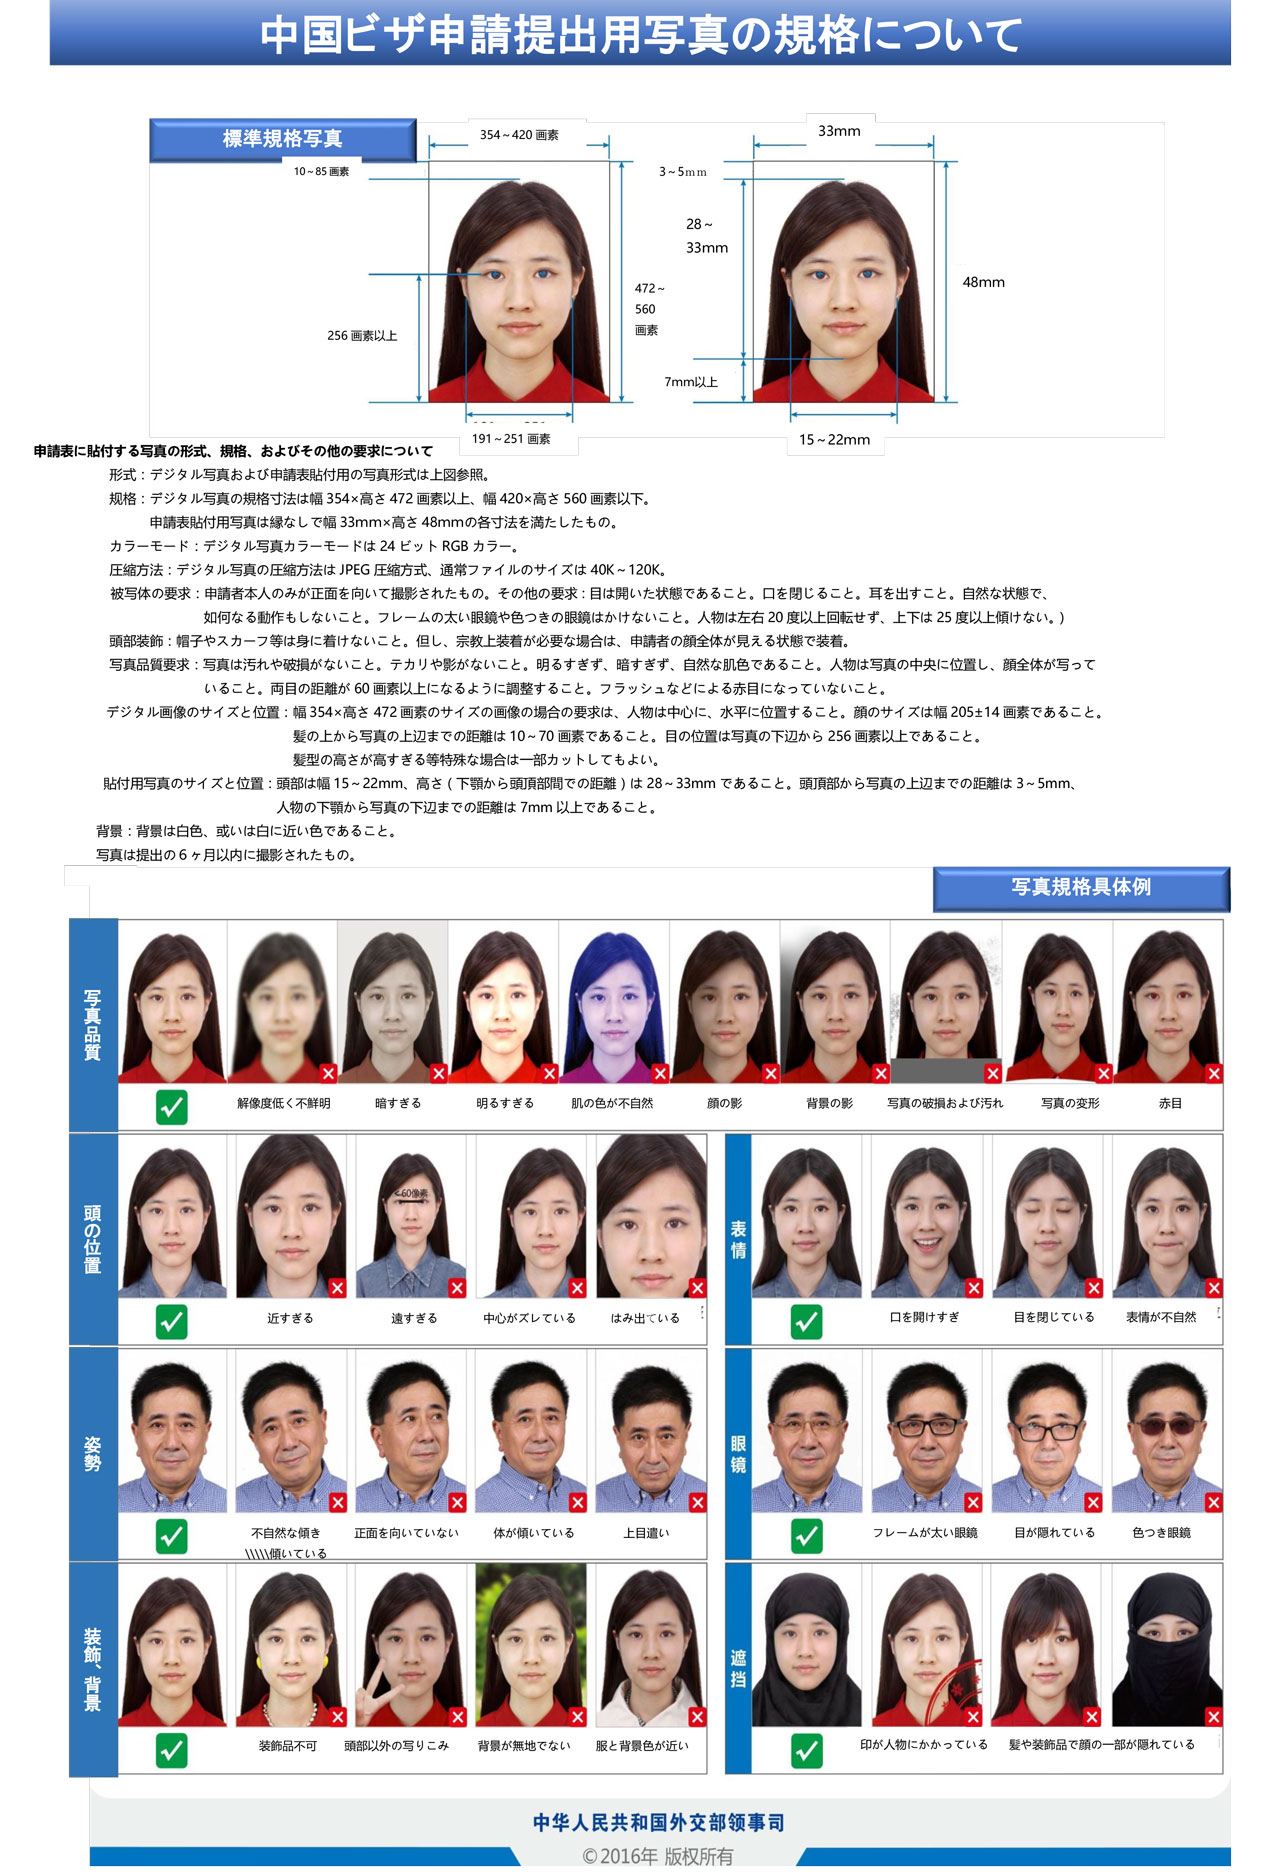 visa-photostandards(jp)